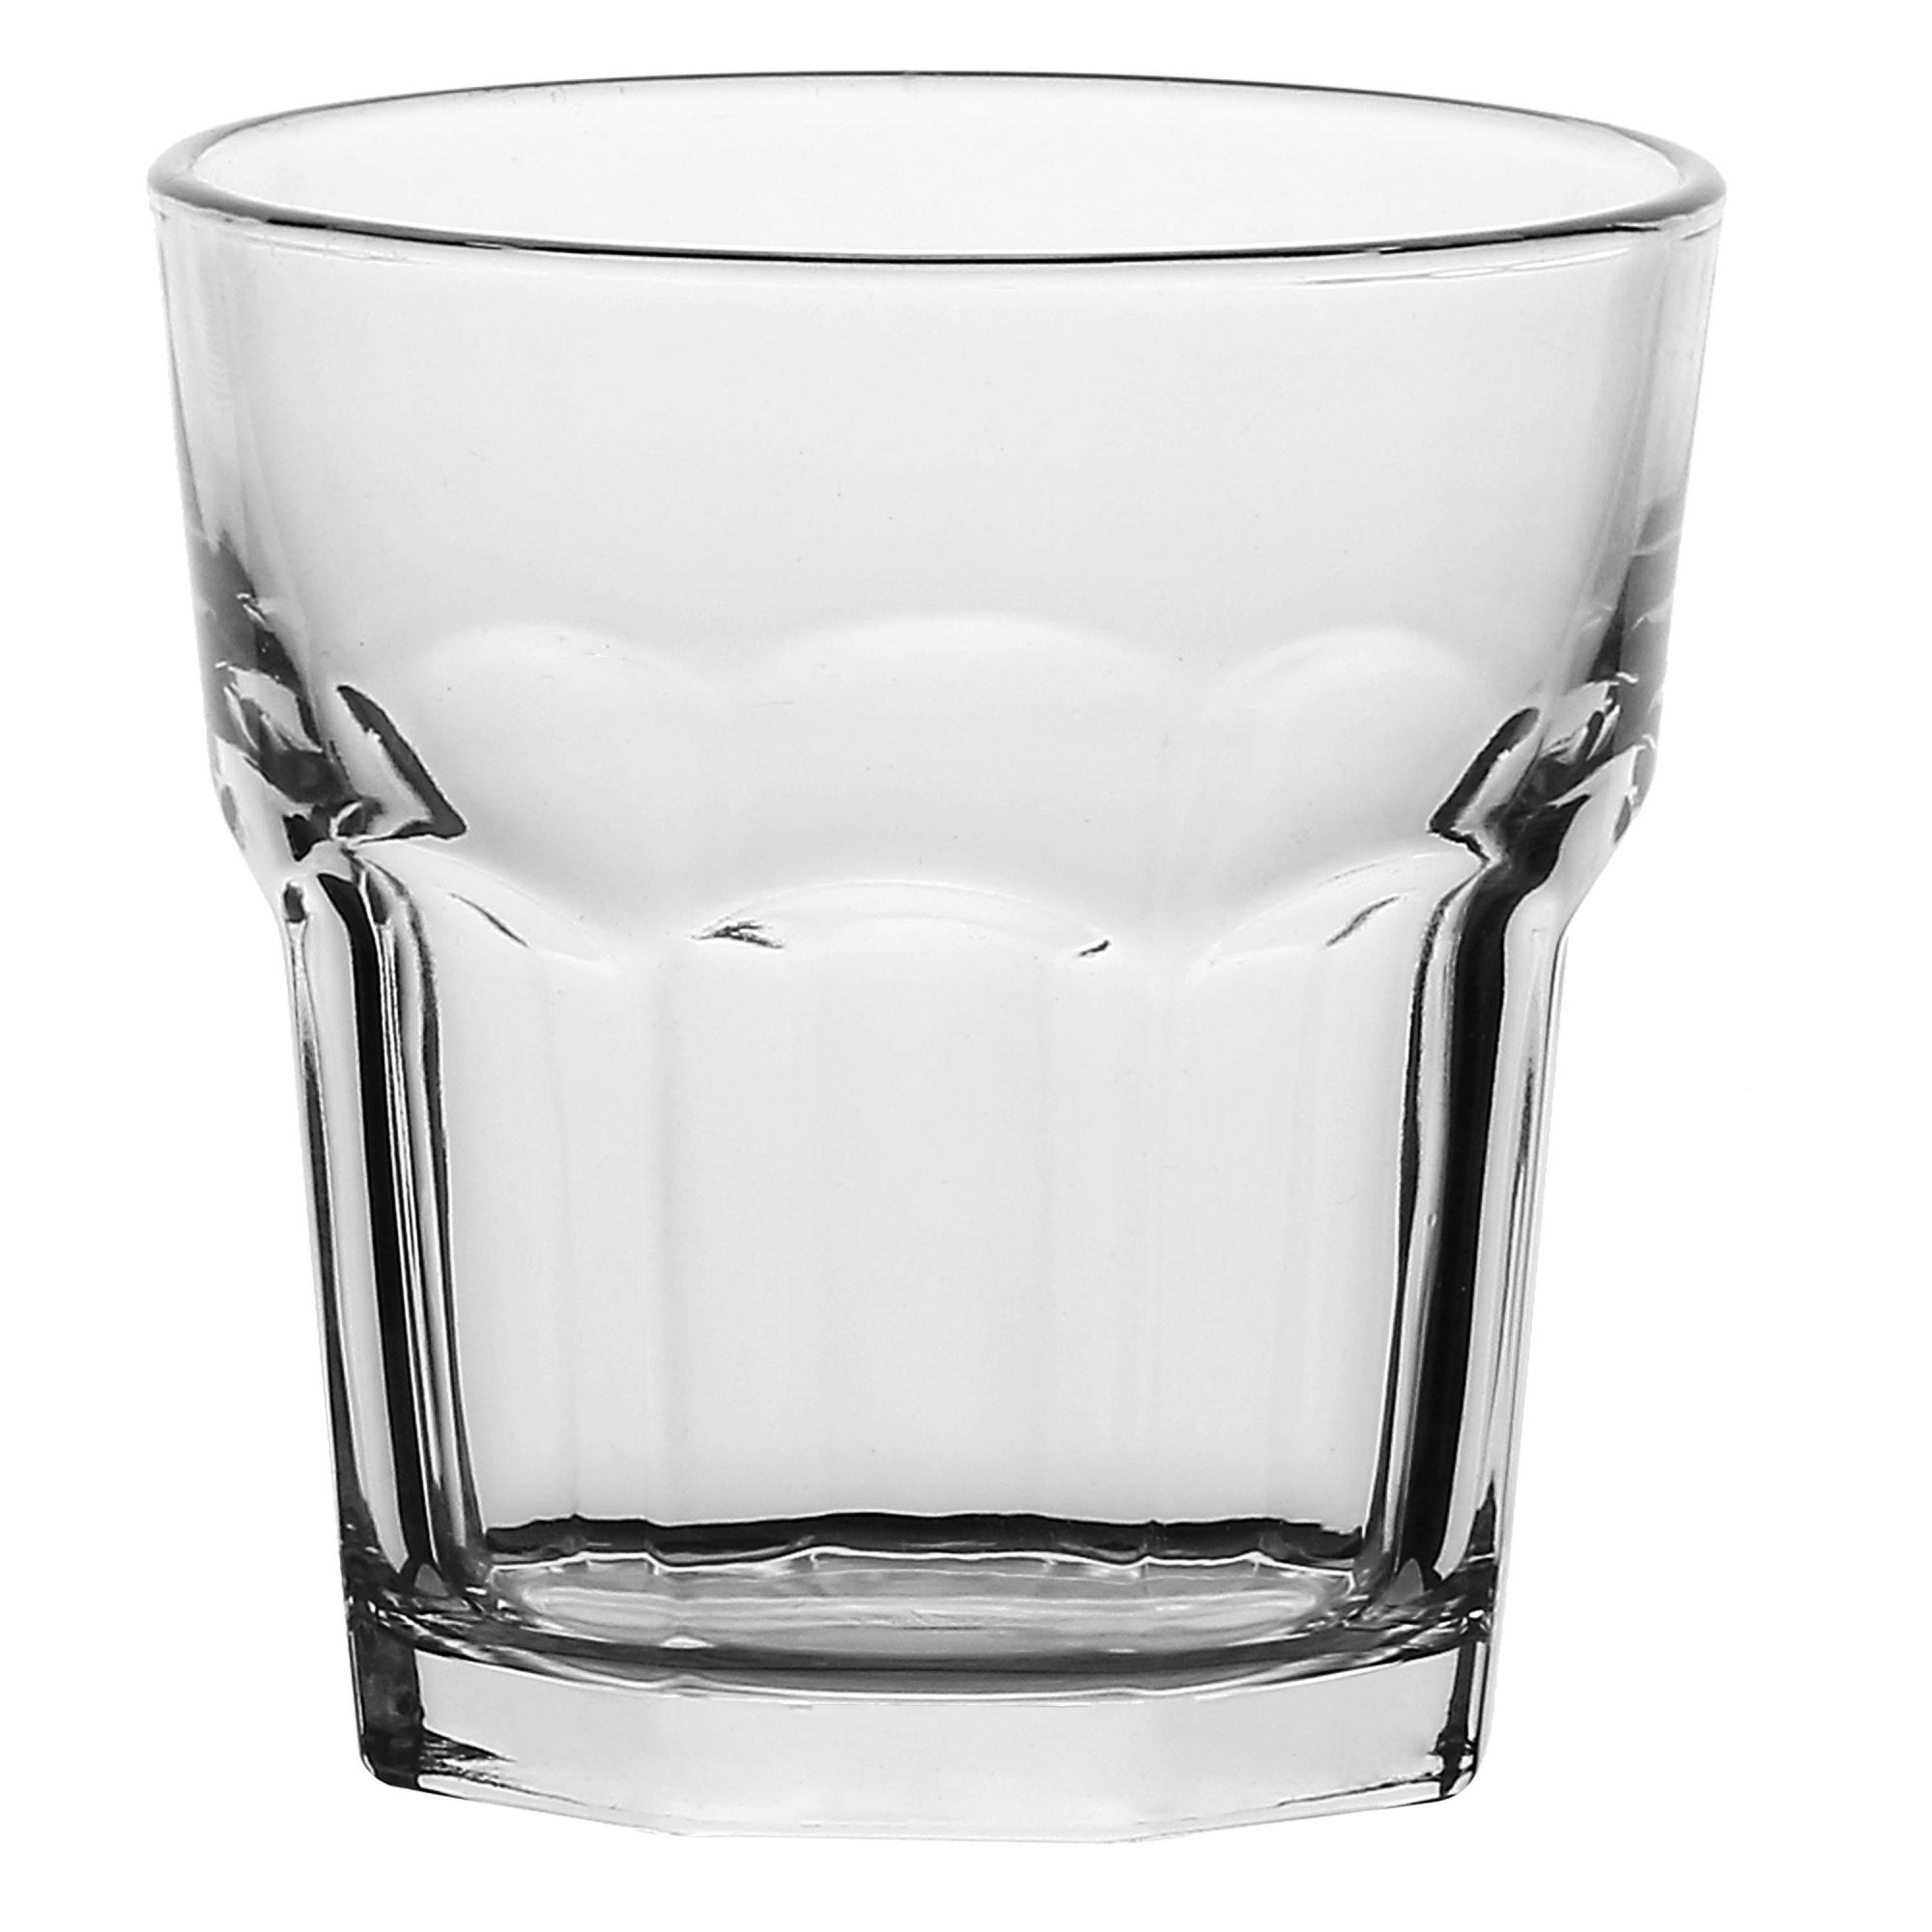 La Porcellana Bianca Cocktailglas Trinkglas Mehrzweckglas Saftglas 360ml, Glas